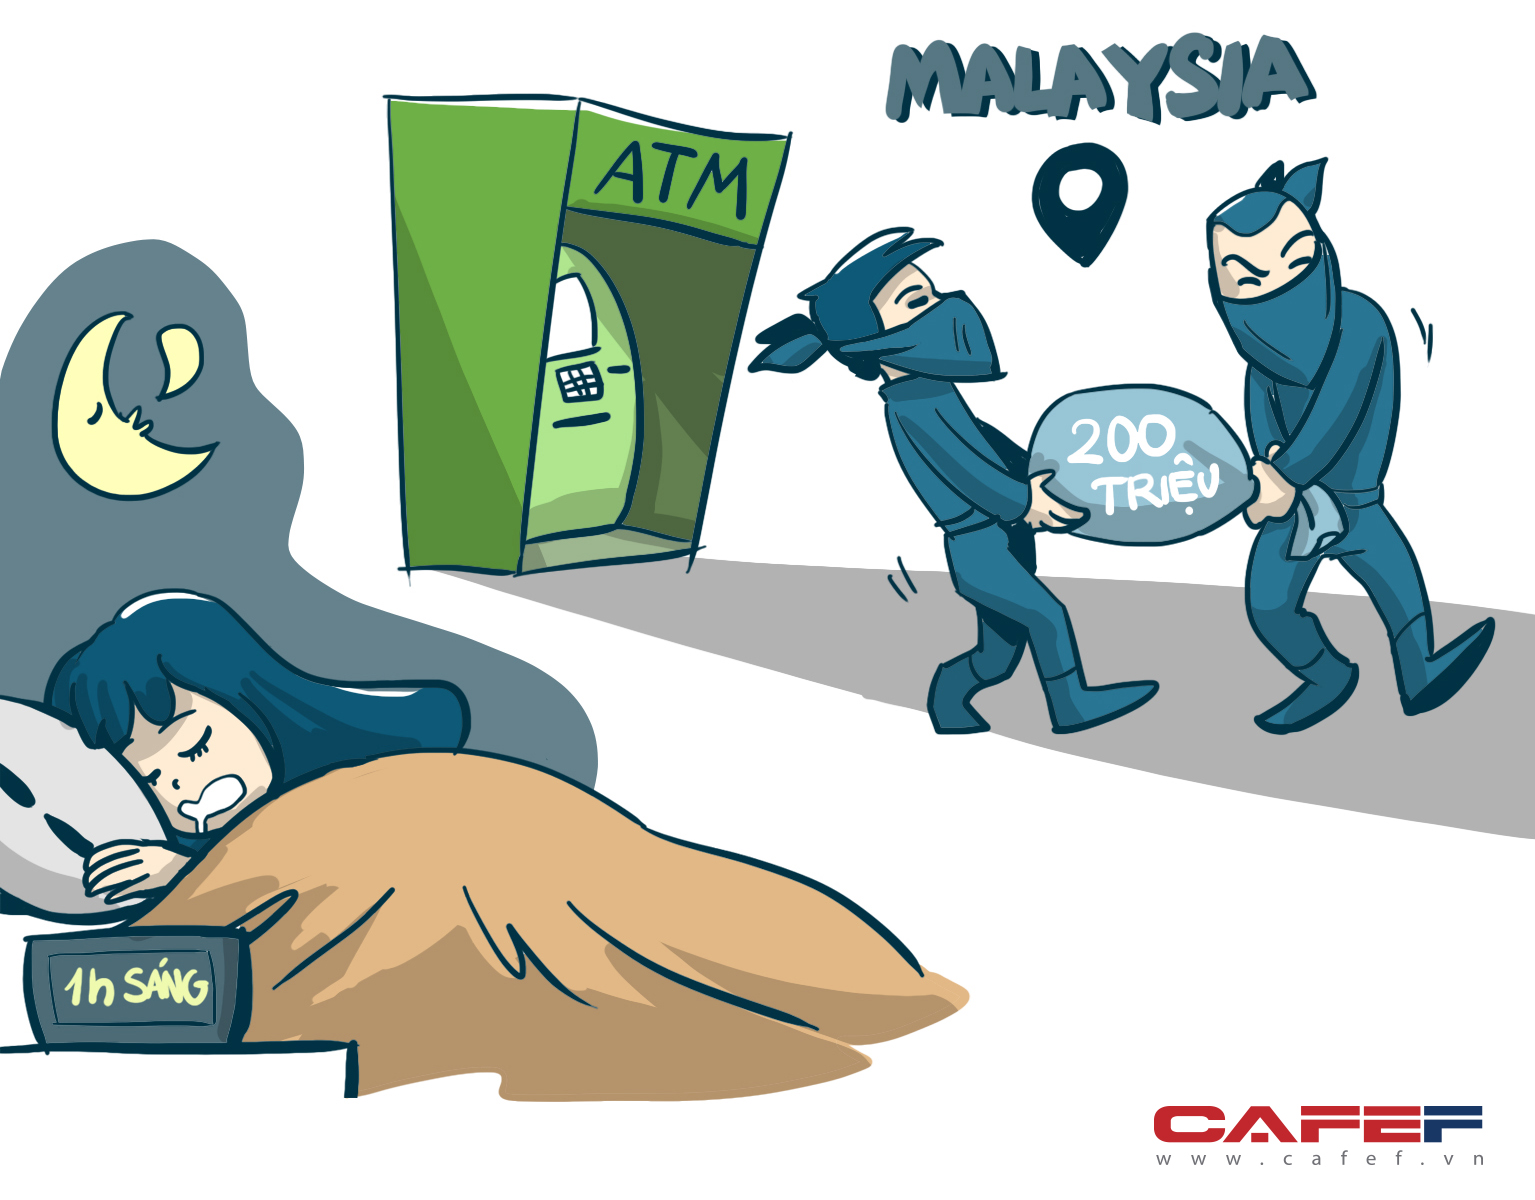 
Vào một ngày nọ, ở khung trời xa xôi nước bạn (Malaysia), 1h sáng, hai tên hacker đã rút trộm 200 triệu đồng qua cây ATM trong khi thẻ của chính chủ vẫn trong ví tại Việt Nam còn chủ thẻ thì đang say giấc nồng.
